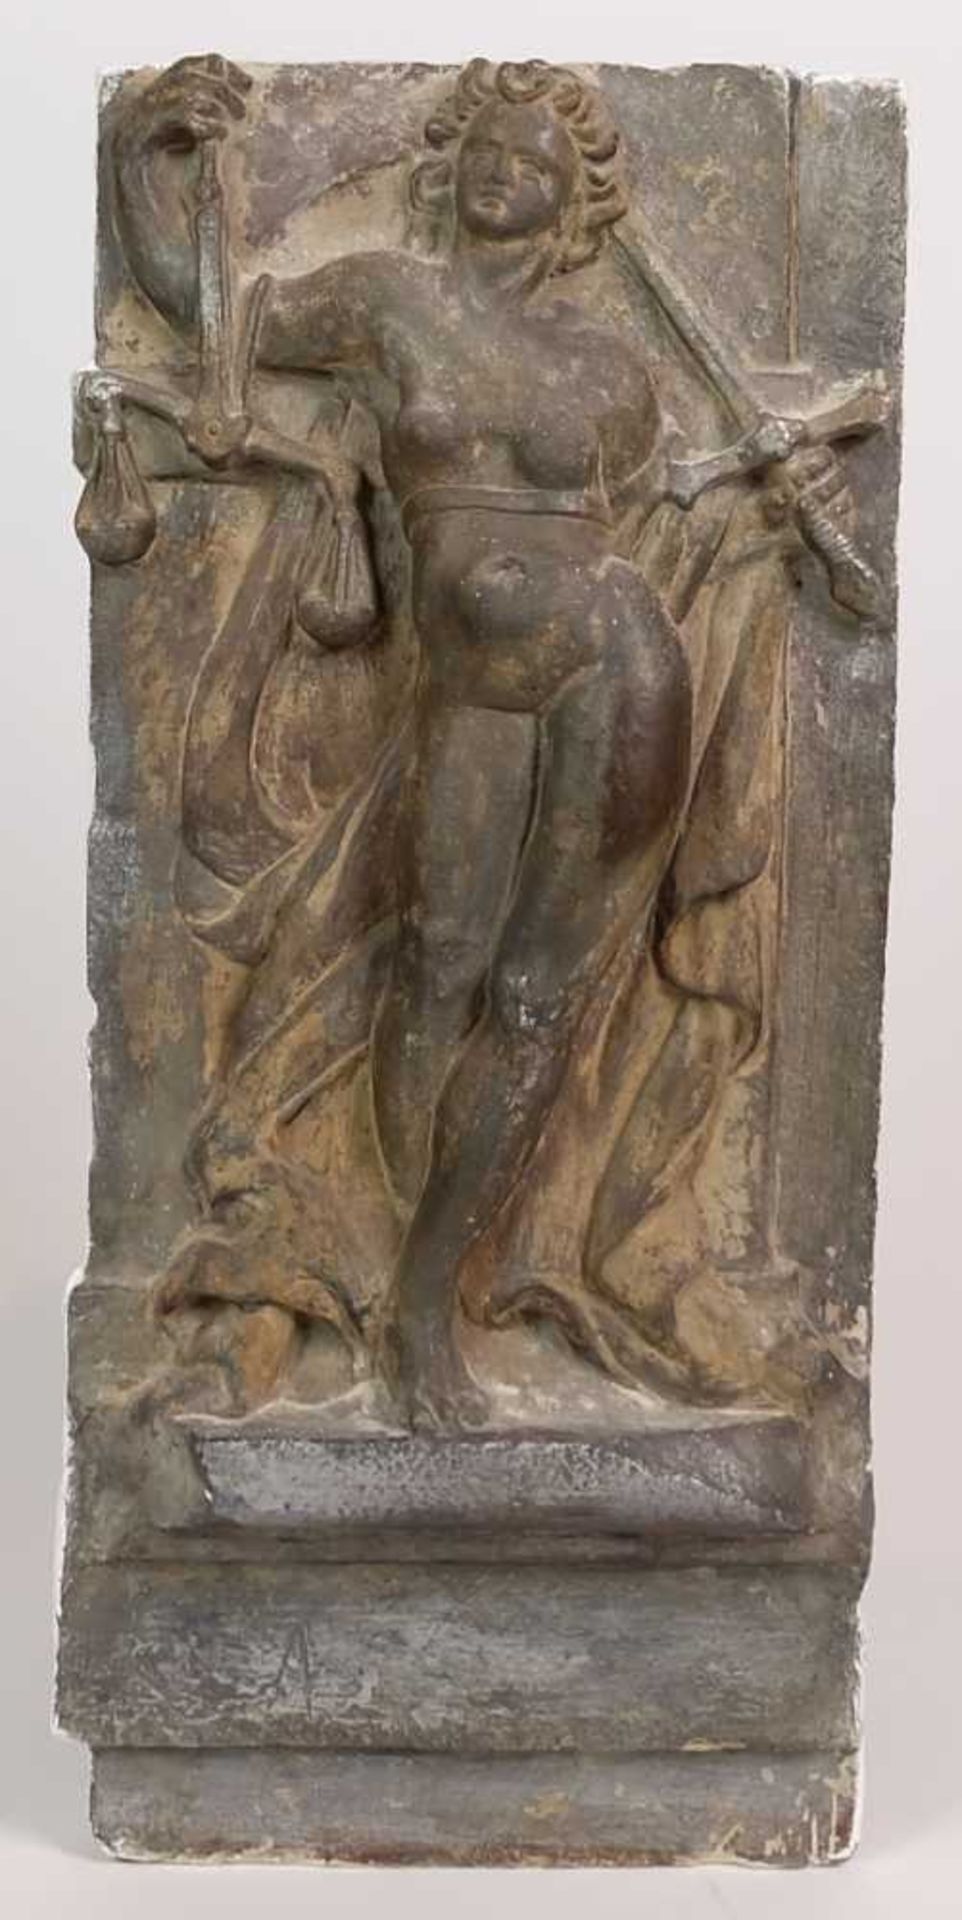 STEINRELIEF, Barock Epoche, Halbrelief der Justizia, 54 x 24,5 x 14 cm, spätere Fassung bzw